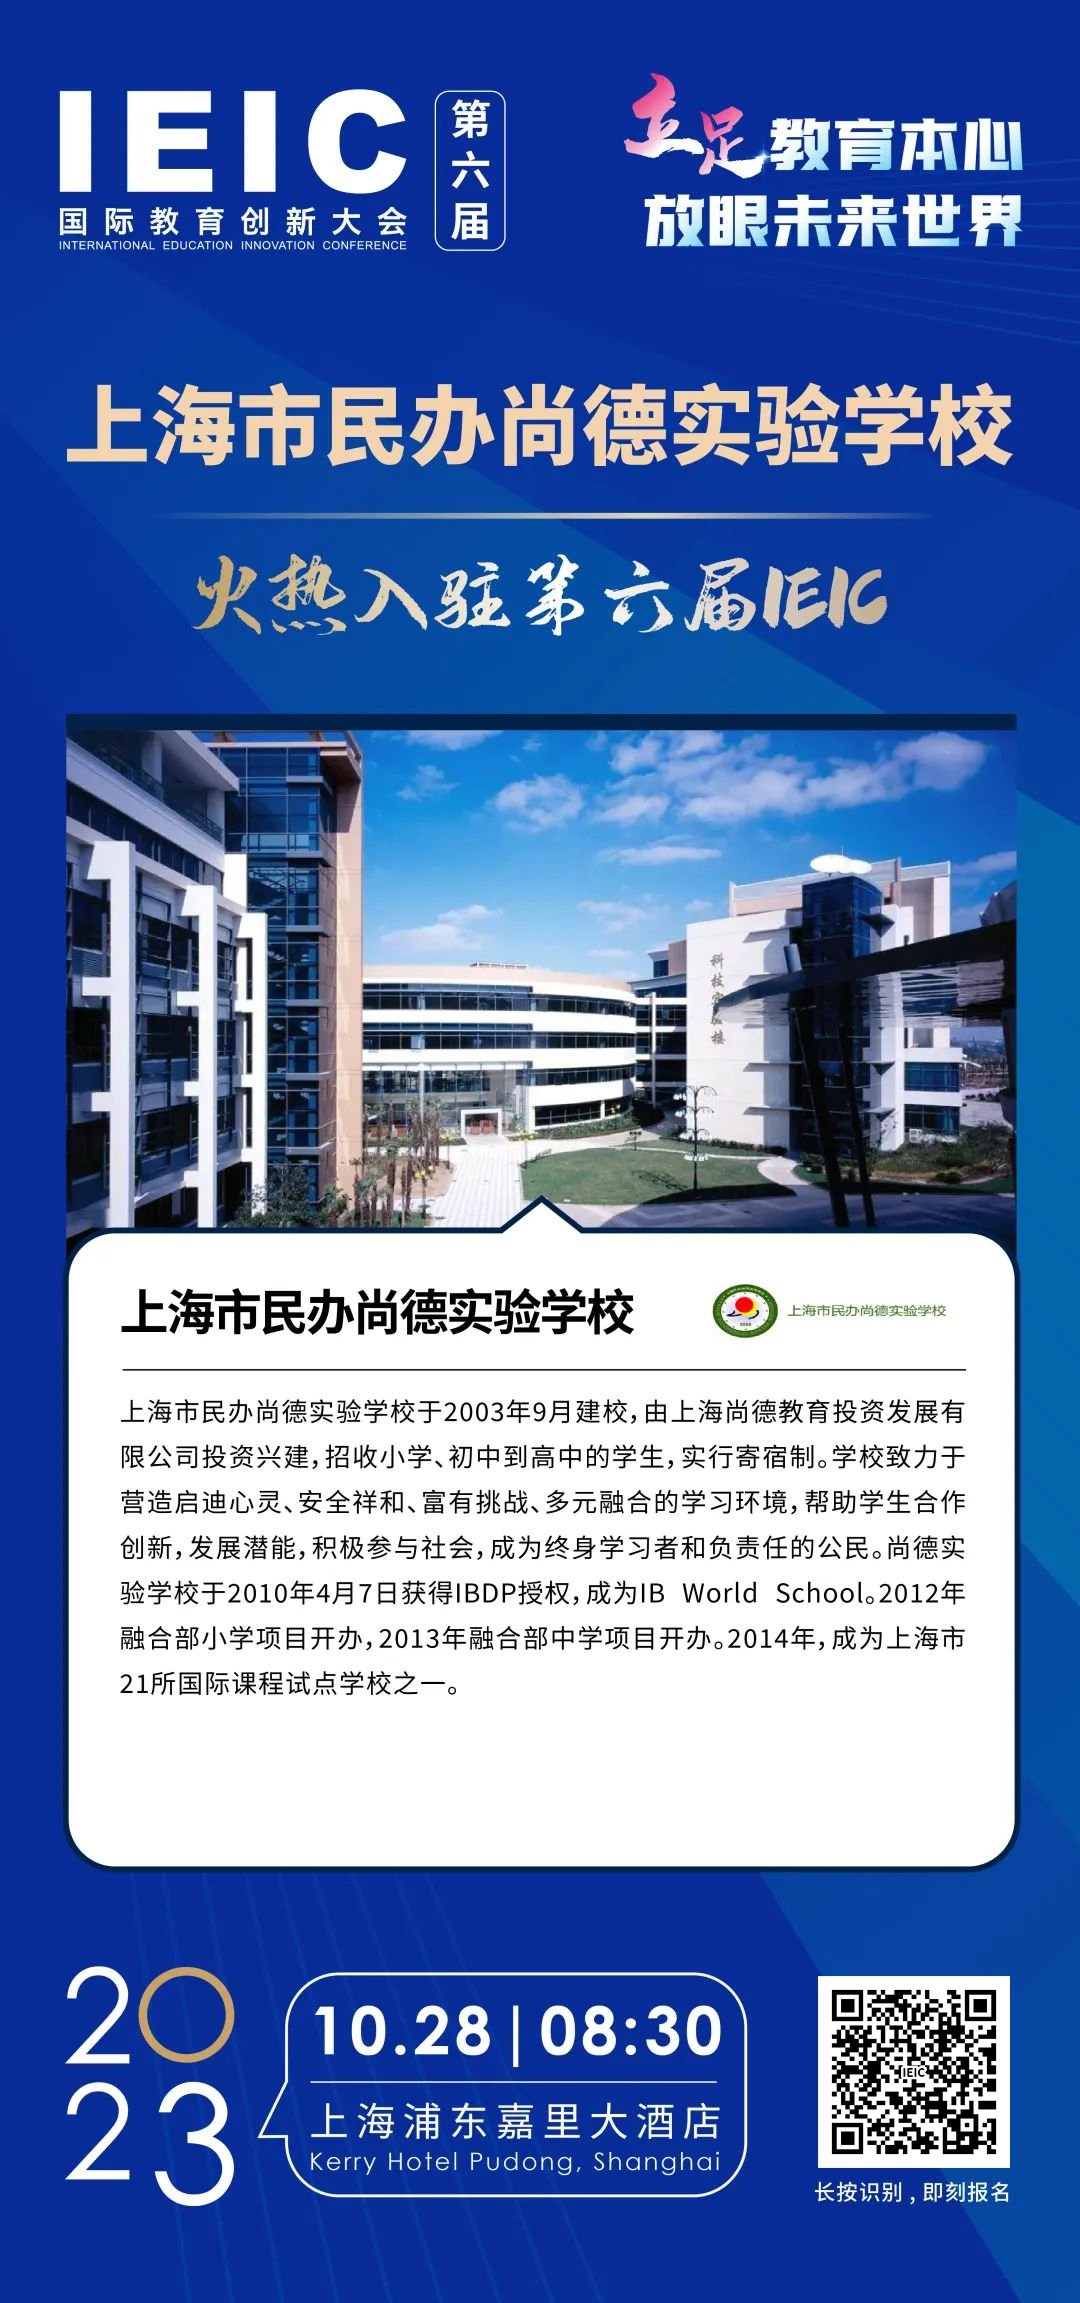 上海市民办尚德实验学校 | 火热入驻第六届IEIC国际教育创新大会